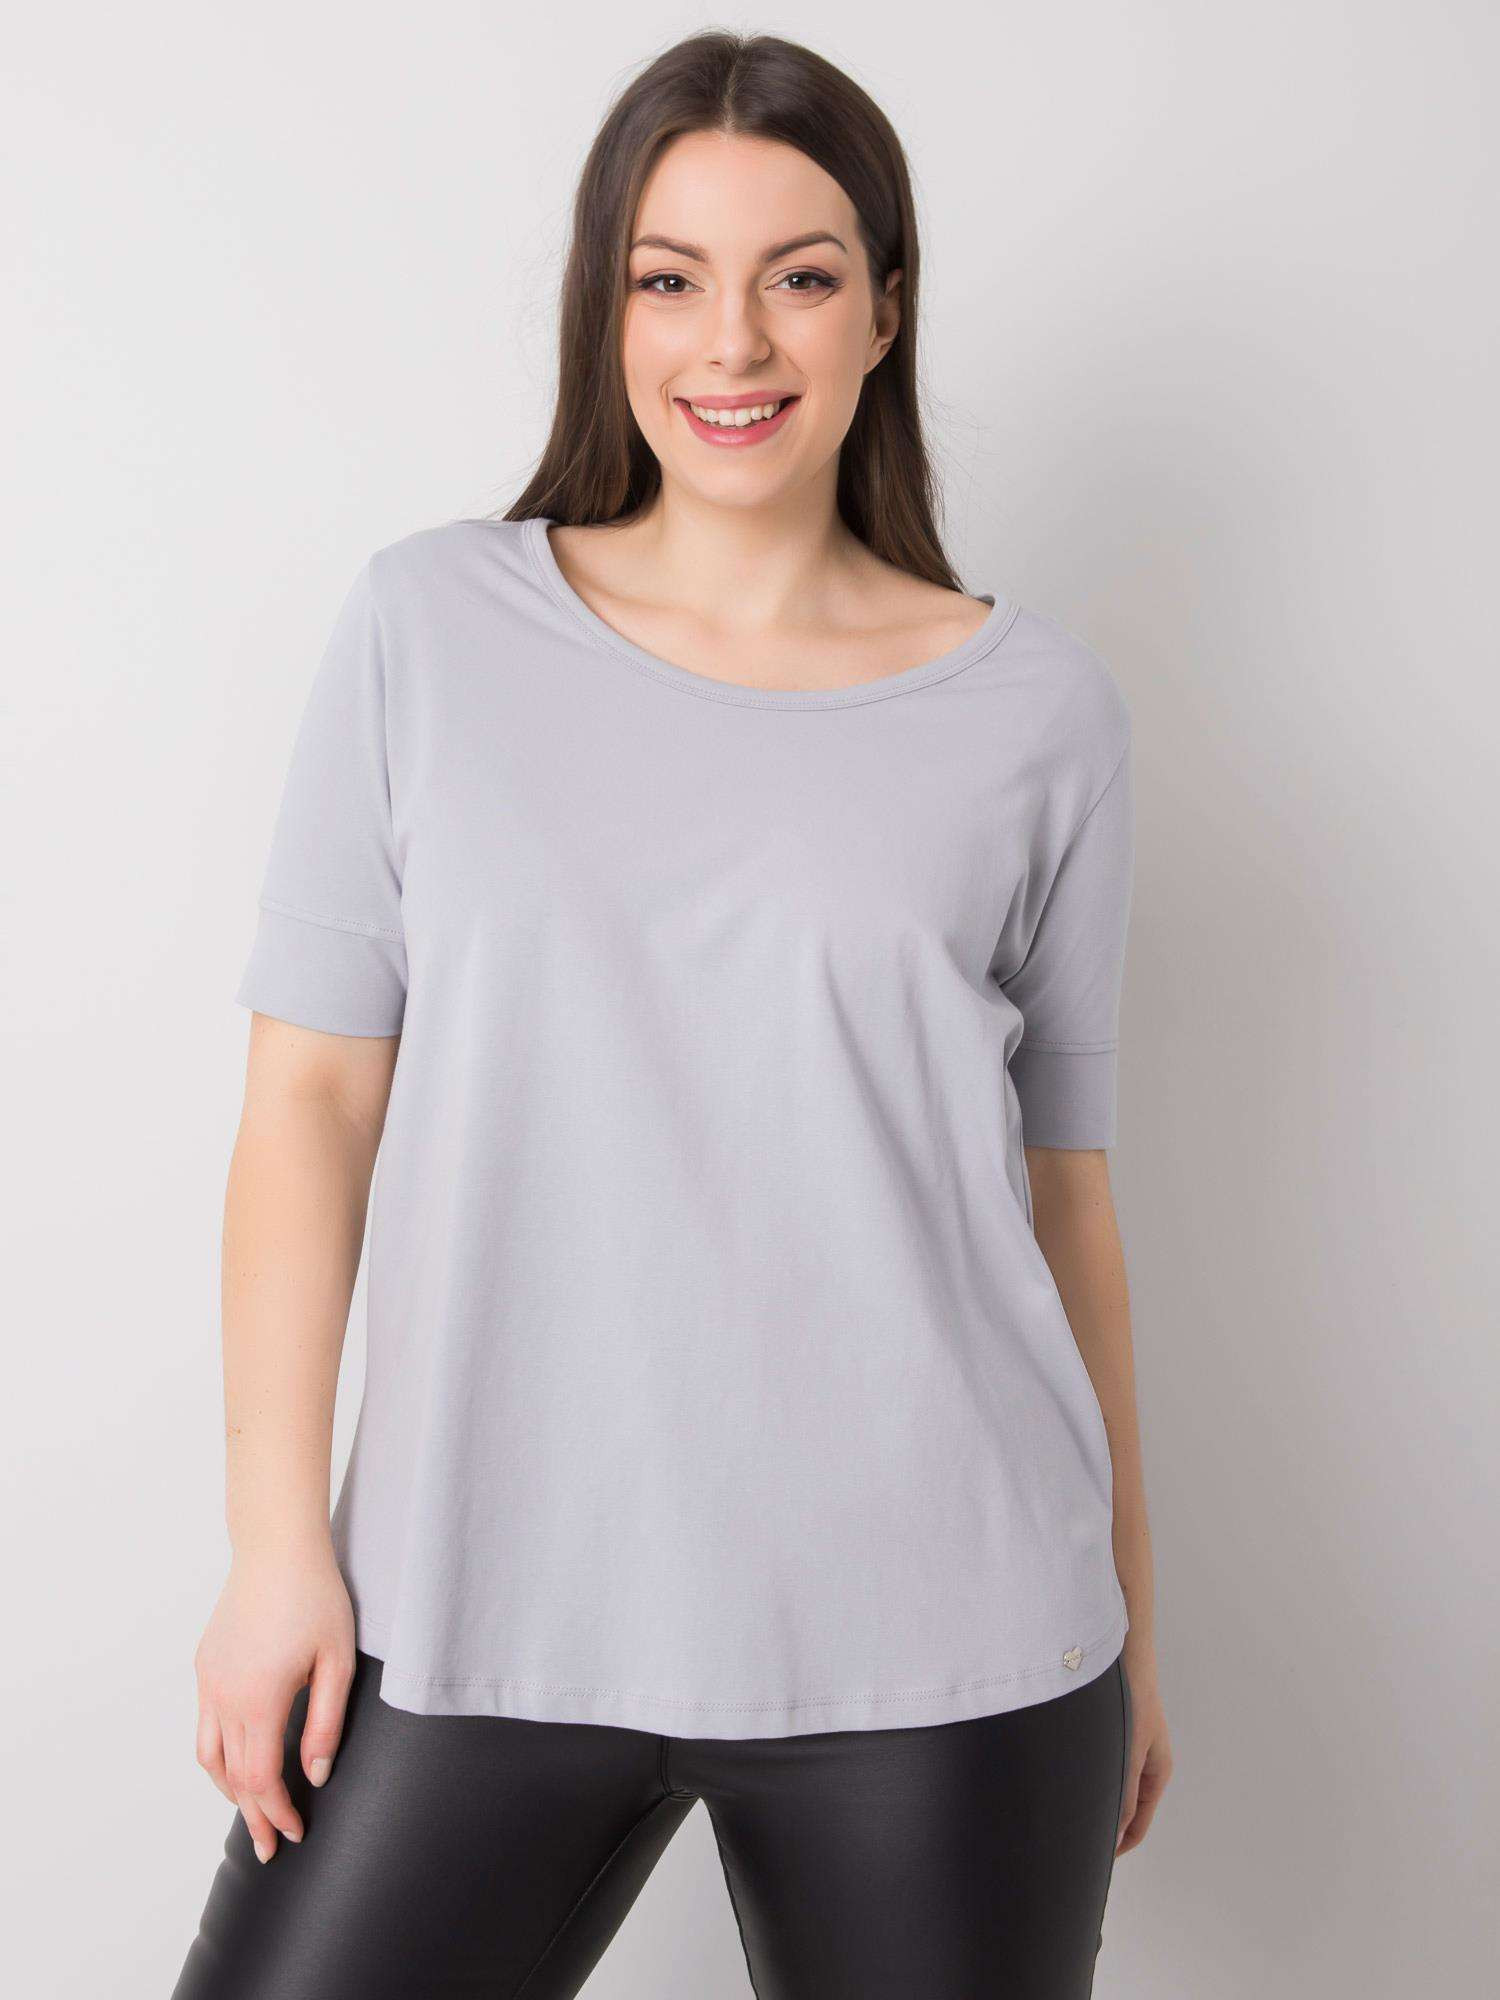 Dámské světle šedé bavlněné tričko nadměrné velikosti 2XL